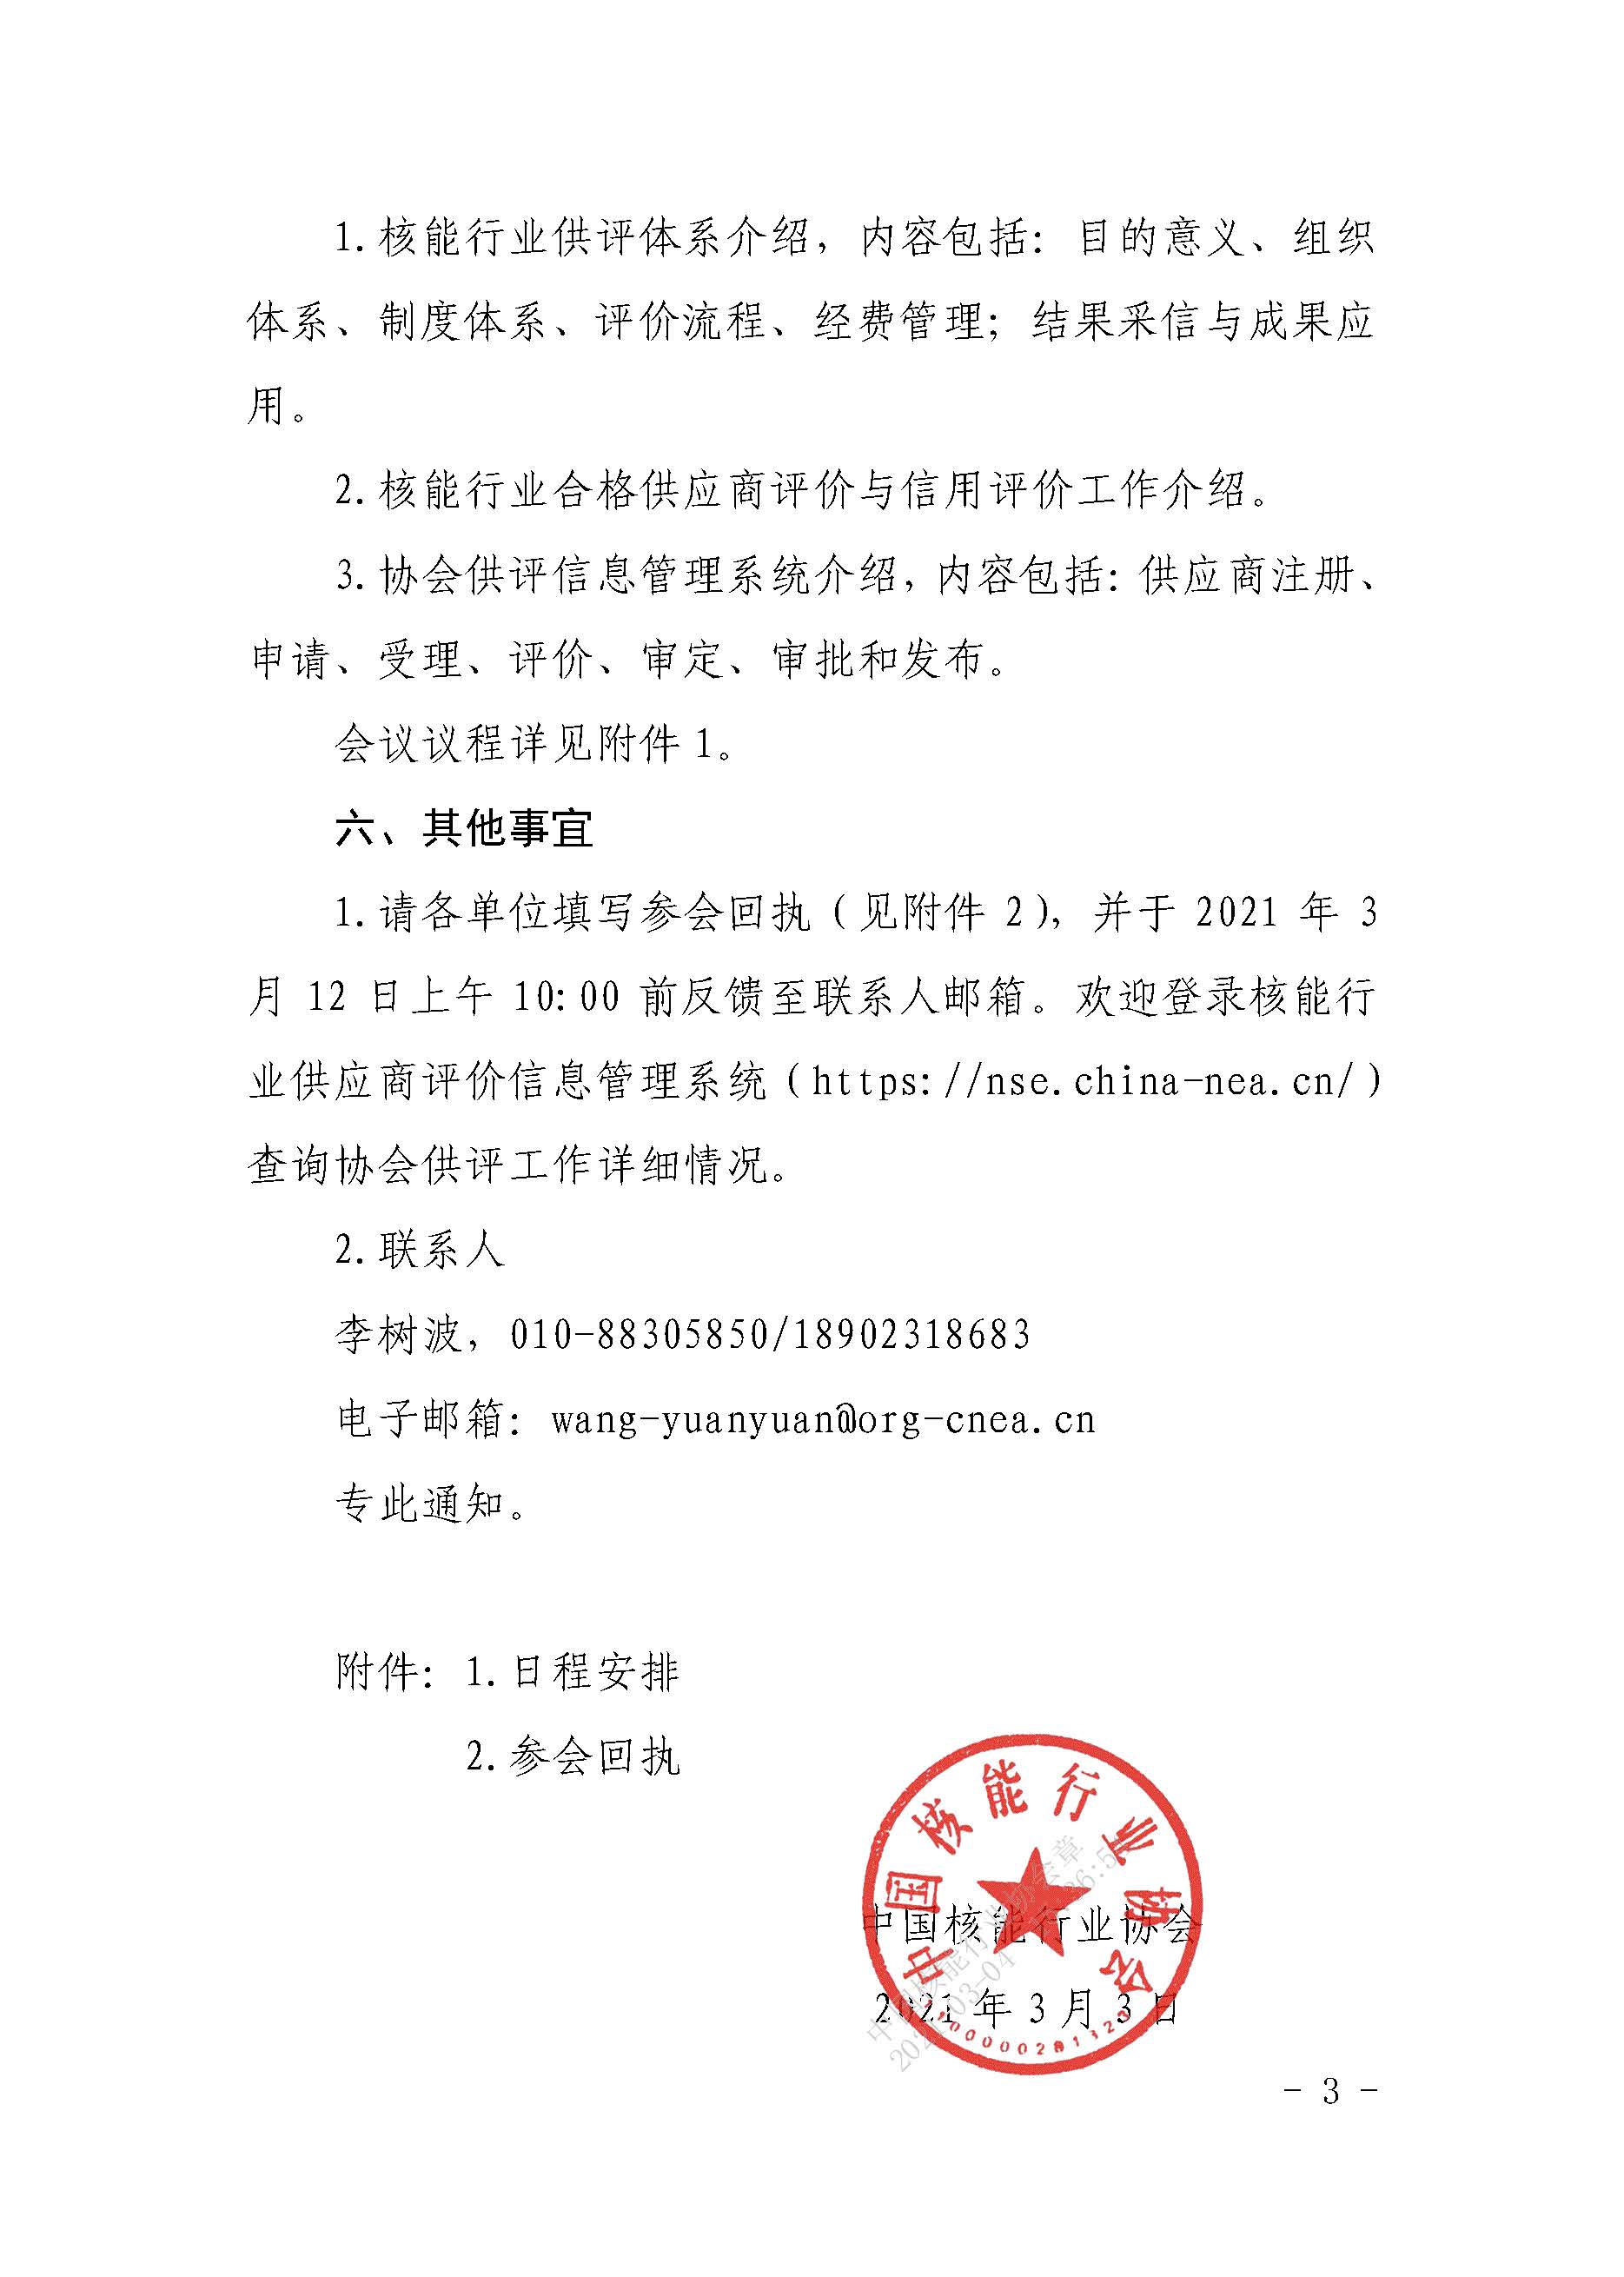 关于召开中国核能行业协会供应商评价宣讲会的通知3.4_页面_3.jpg